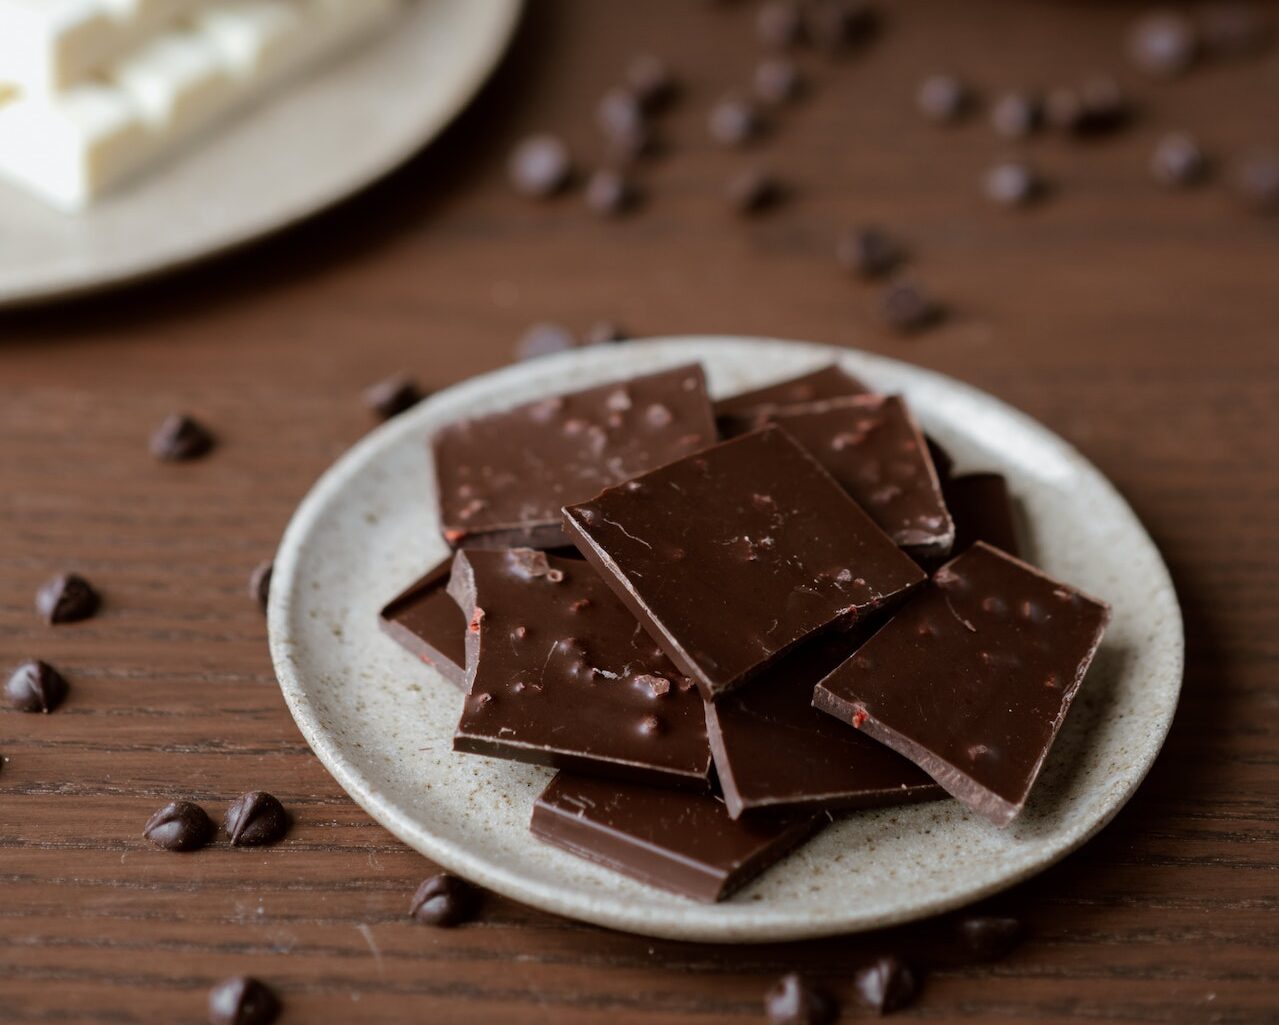 Πώς να αποθηκεύσεις σωστά τη σοκολάτα για να διατηρείται φρέσκια μεγαλύτερο διάστημα